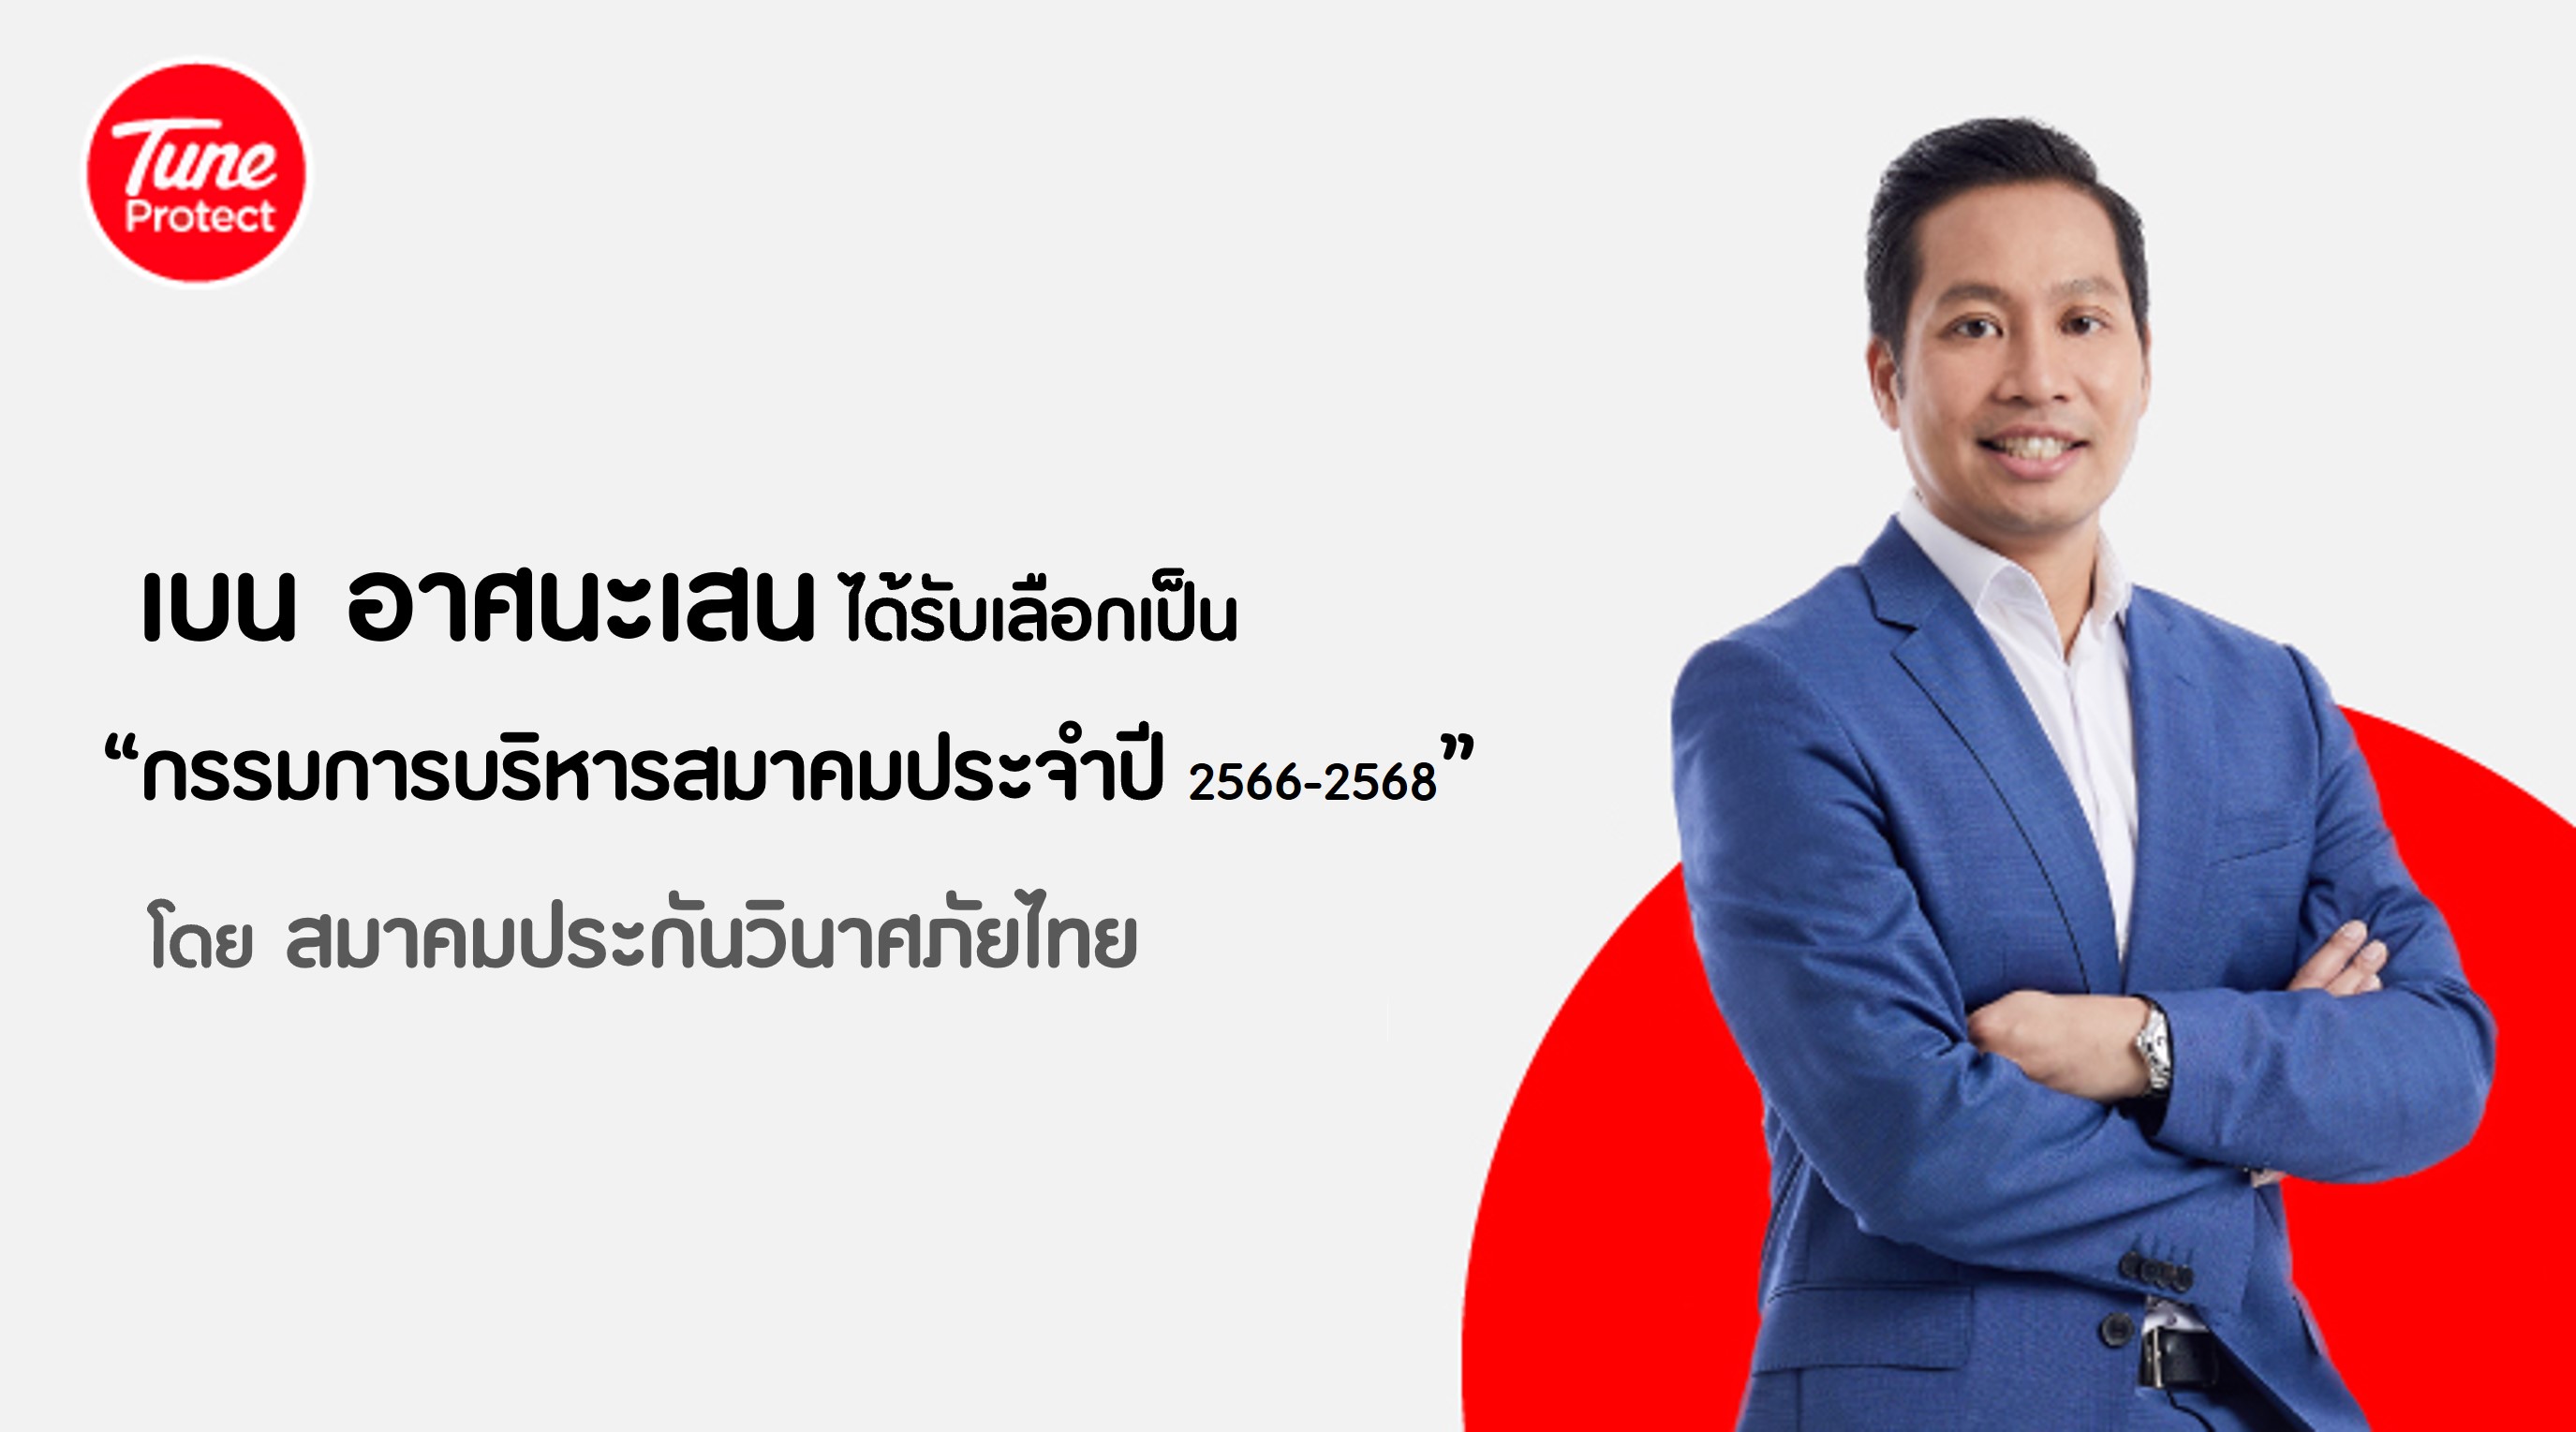 “เบน อาศนะเสน” ได้รับเลือกให้เป็น “กรรมการบริหารสมาคมประจำปี 2566-2568” โดย “สมาคมประกันวินาศภัยไทย”